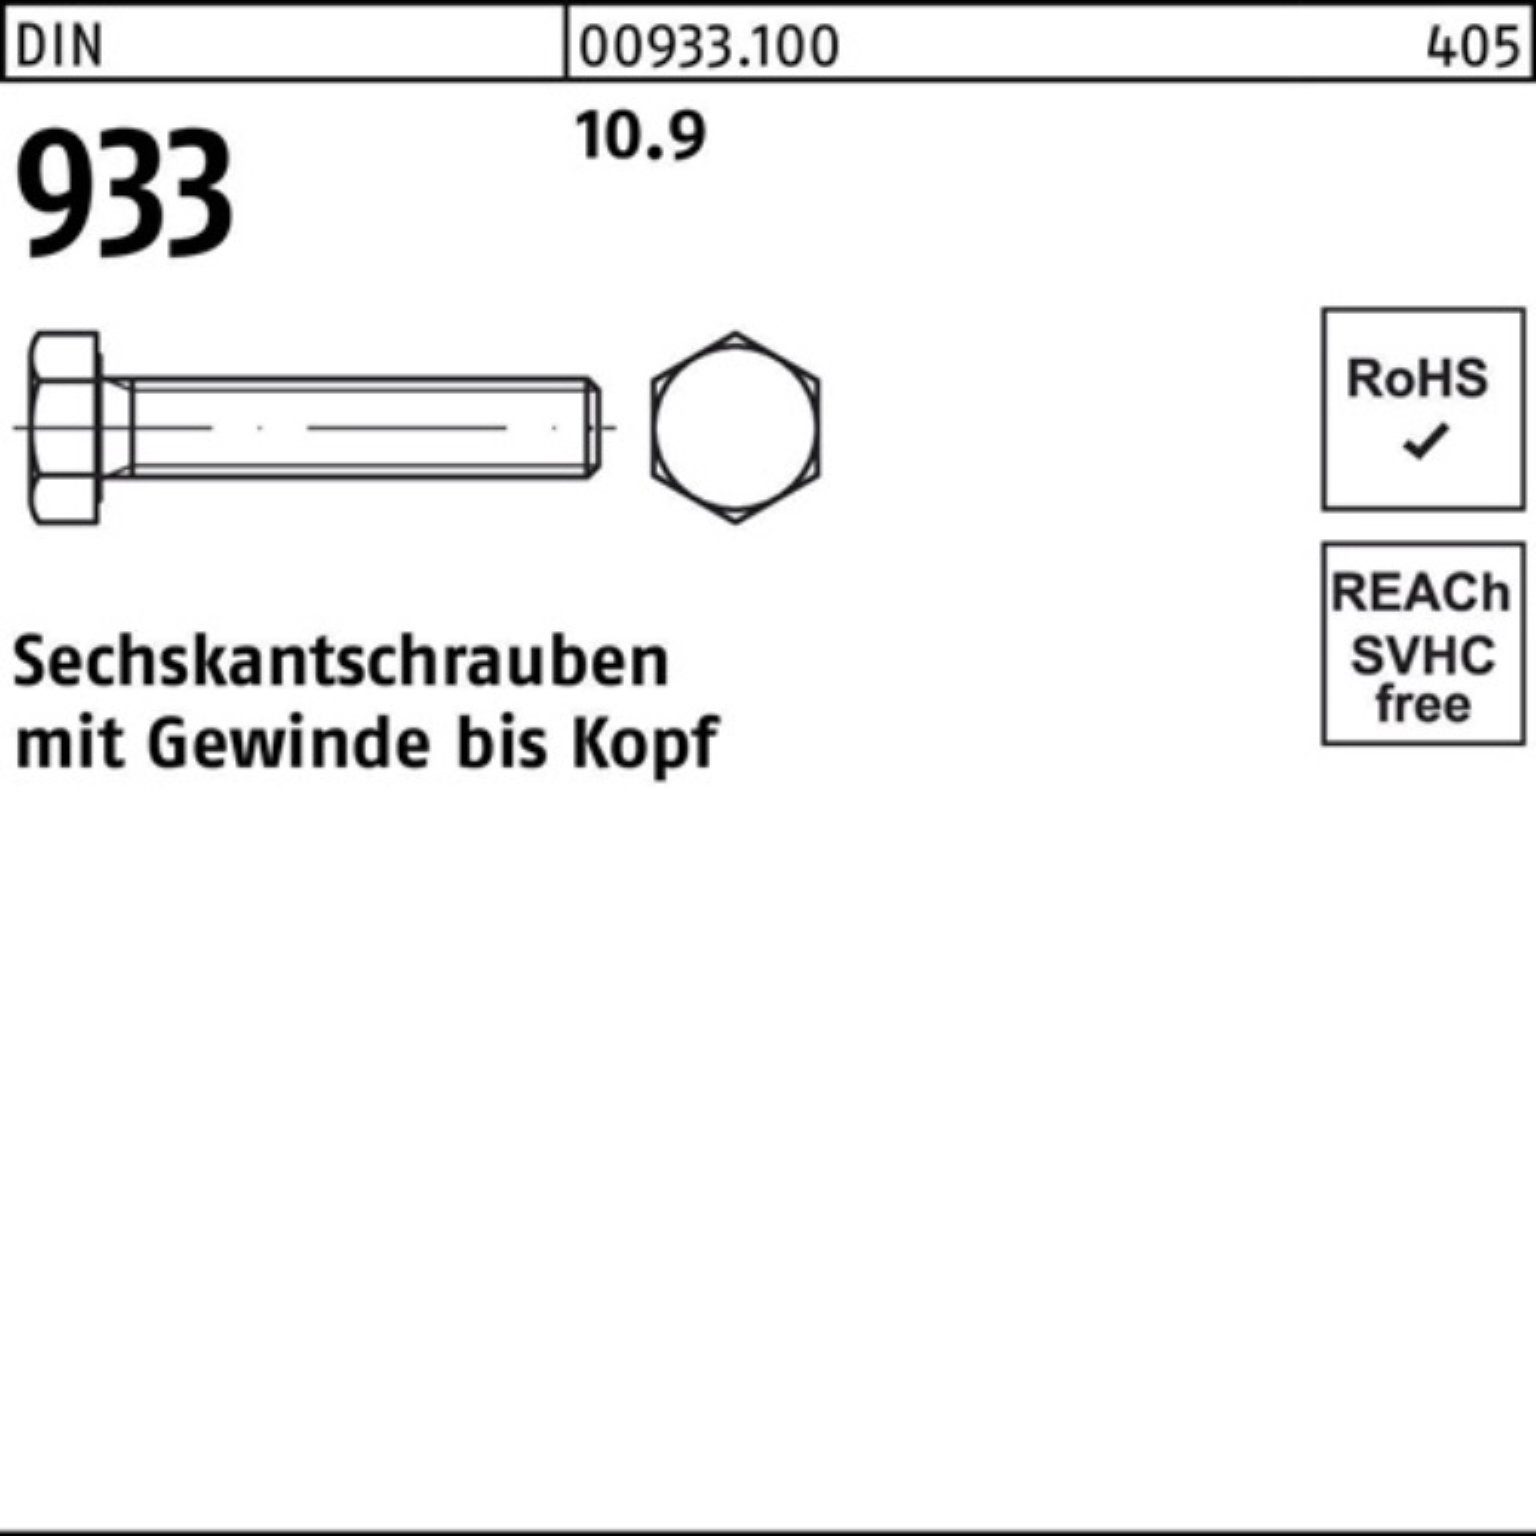 100 Stk Sechskantschraube DIN 933 10.9 M16 x 40